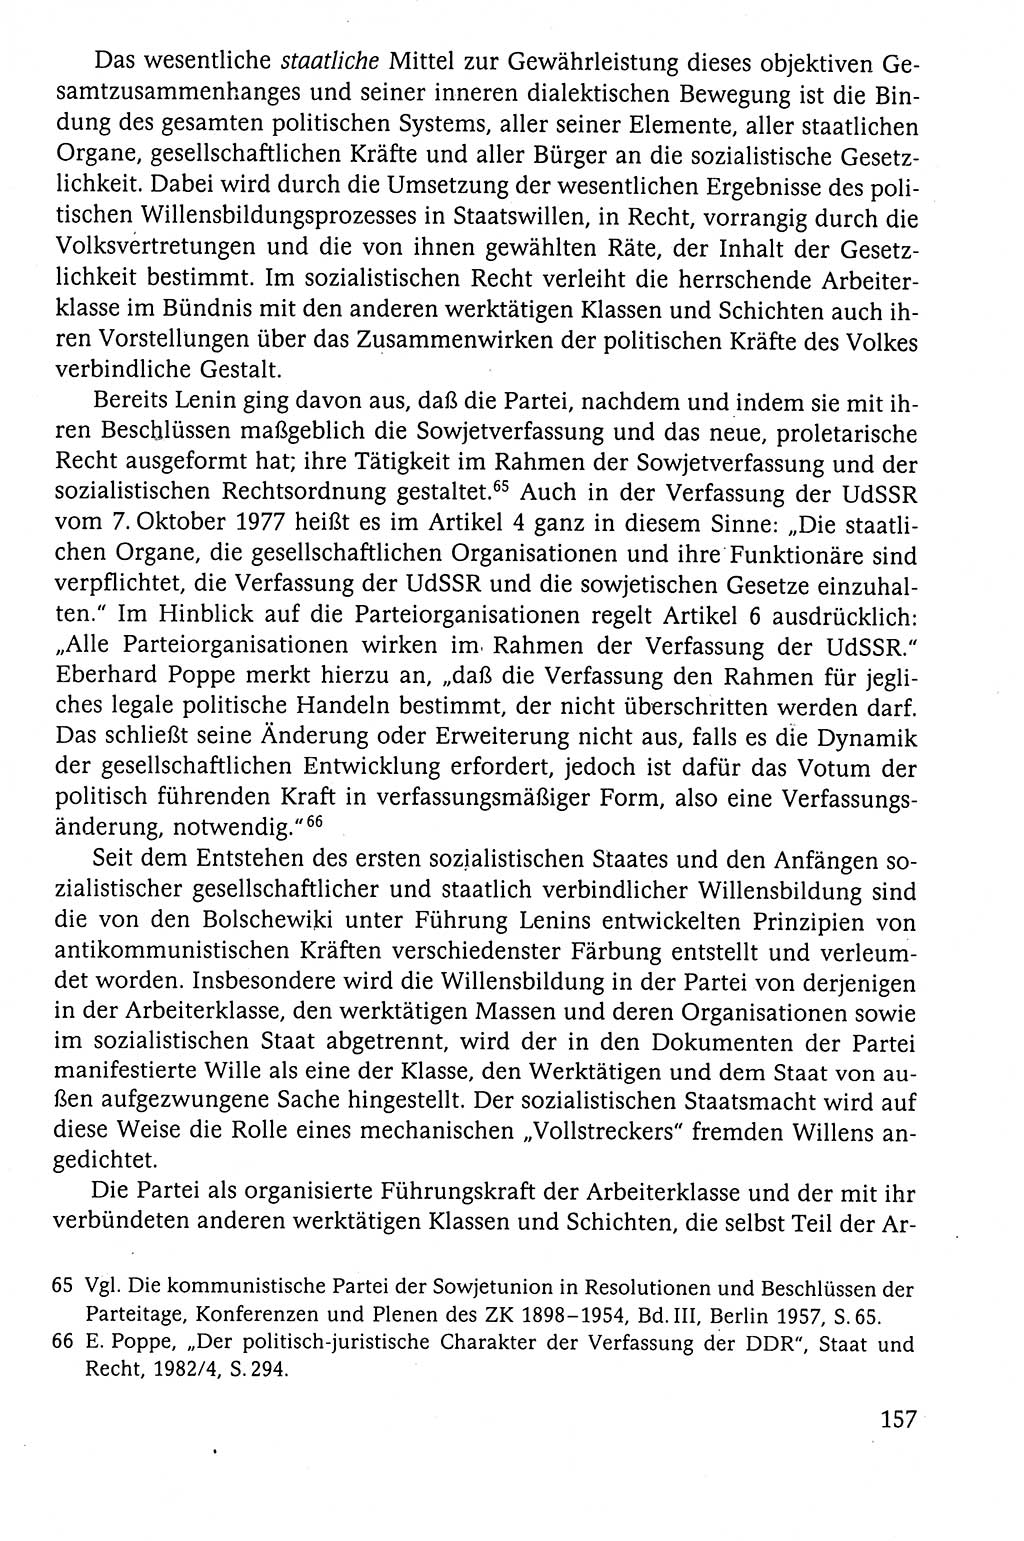 Der Staat im politischen System der DDR (Deutsche Demokratische Republik) 1986, Seite 157 (St. pol. Sys. DDR 1986, S. 157)